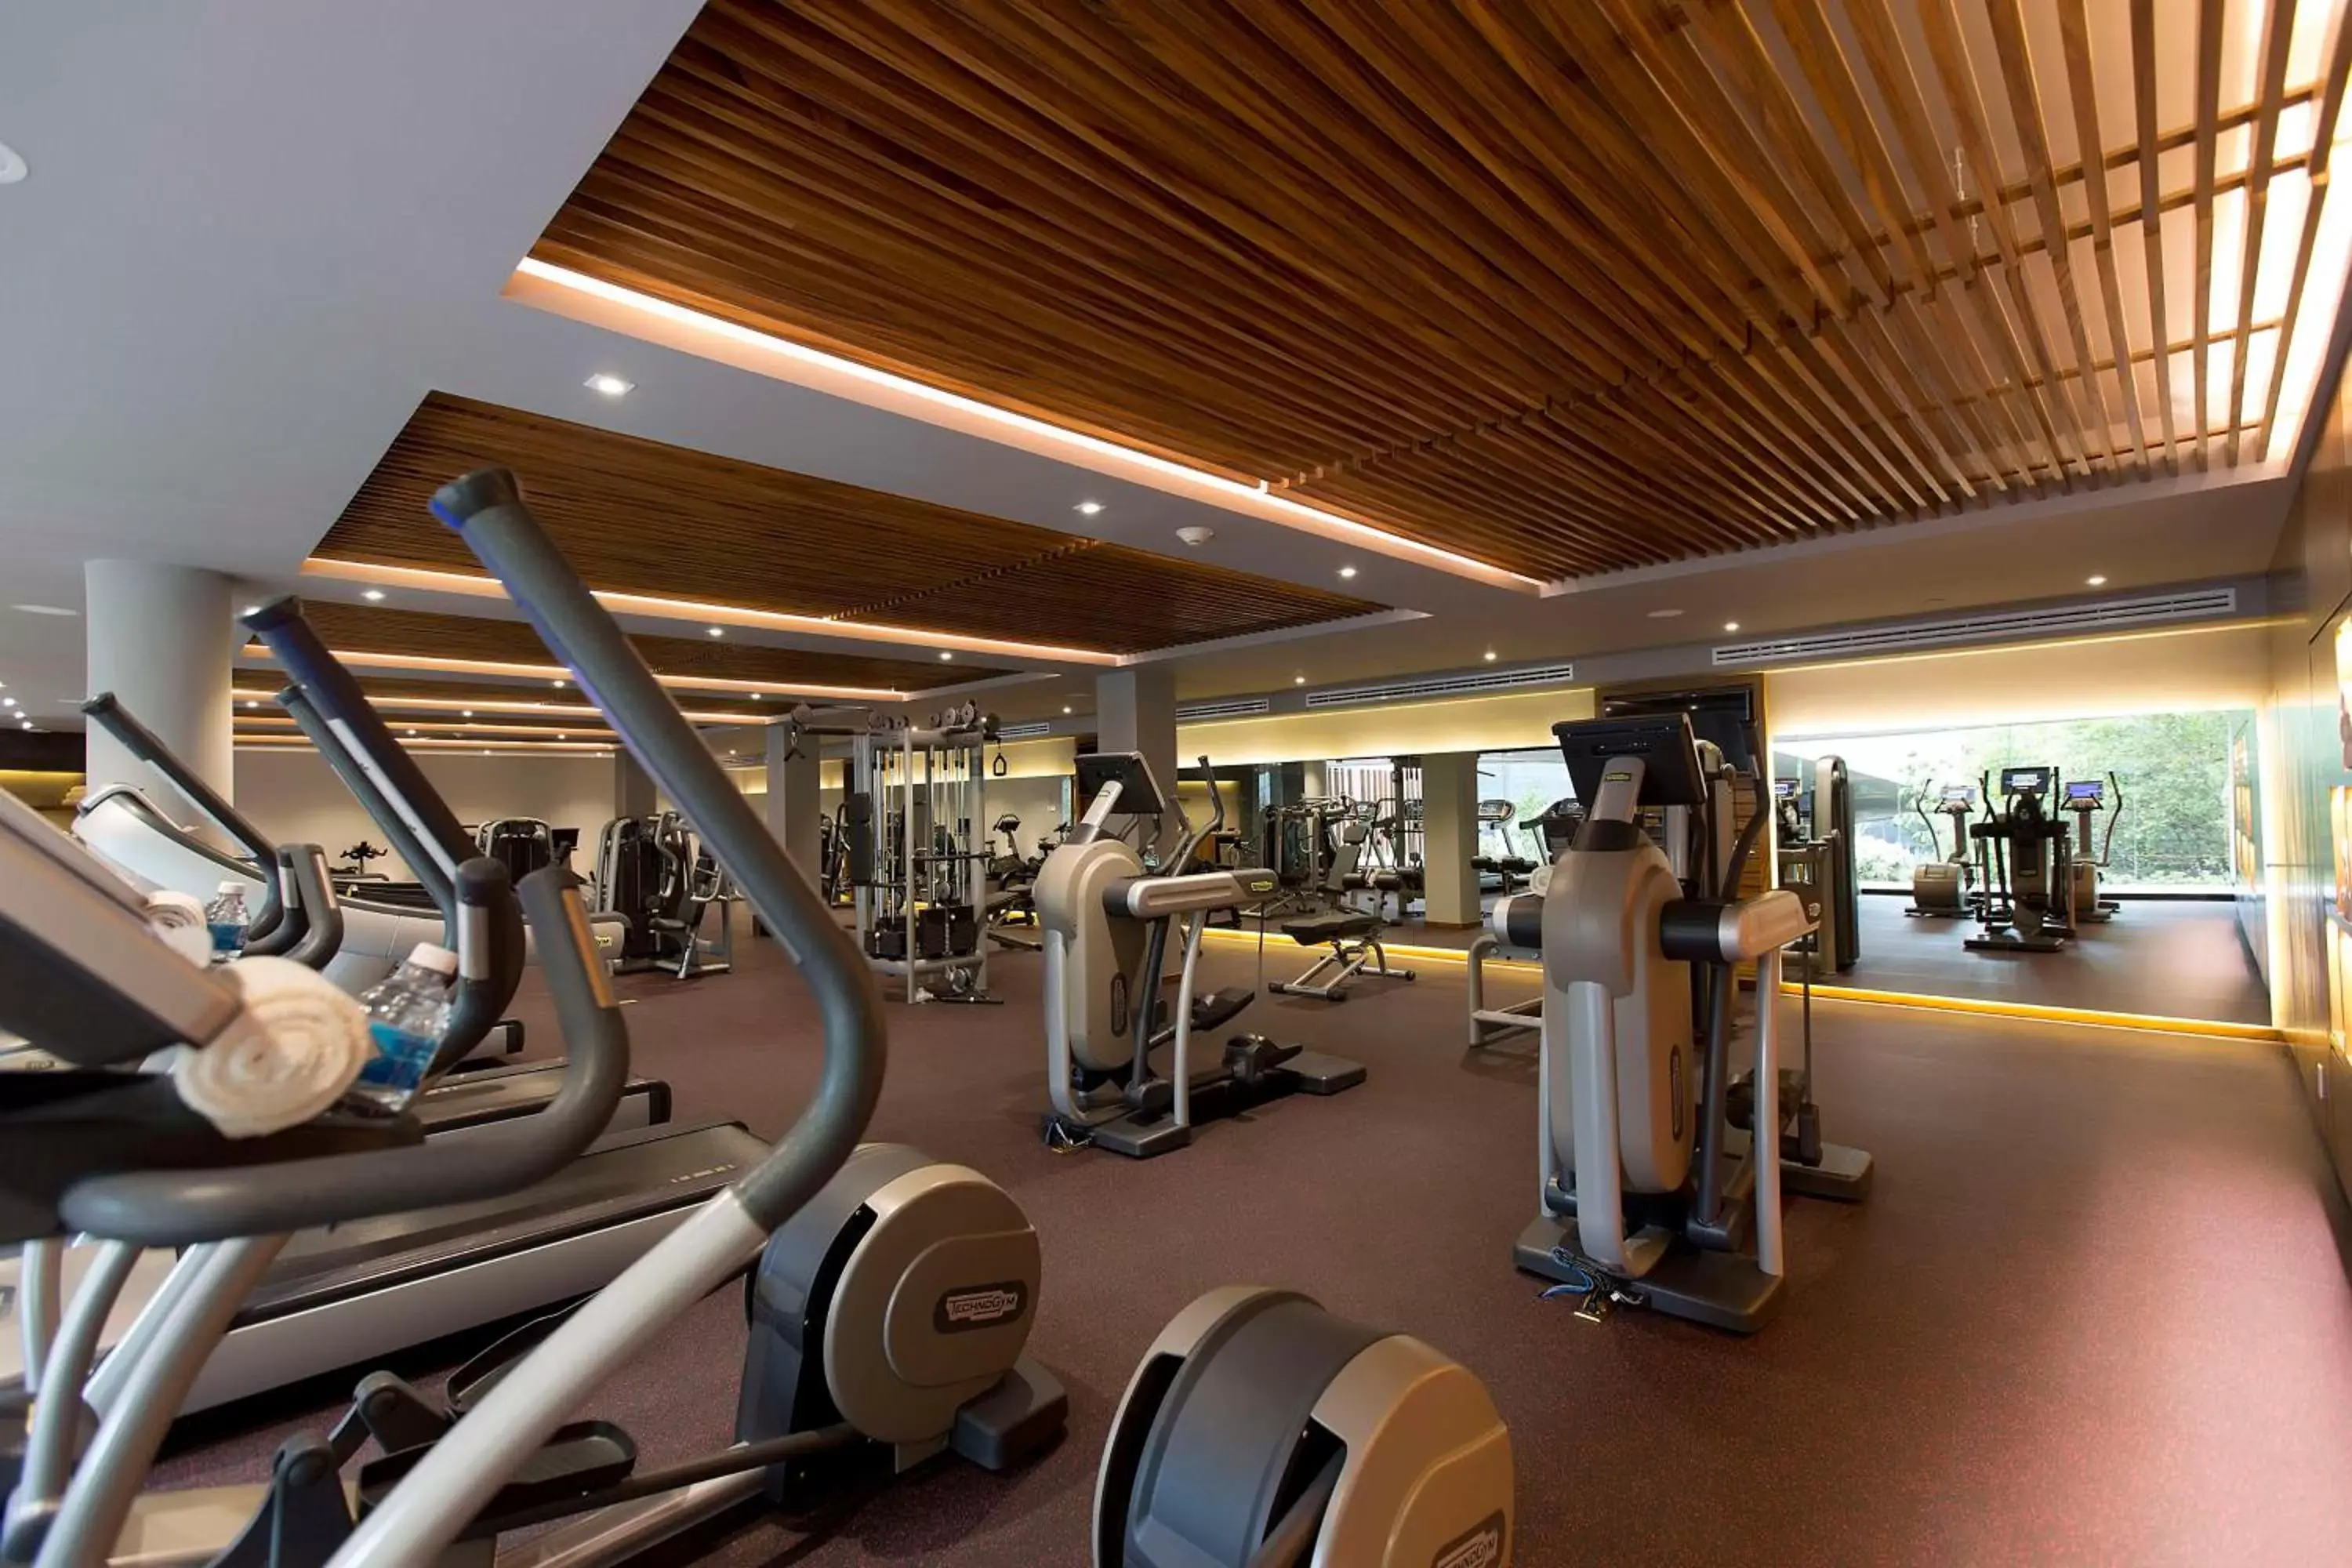 Fitness centre/facilities, Fitness Center/Facilities in Grand Hyatt Playa del Carmen Resort